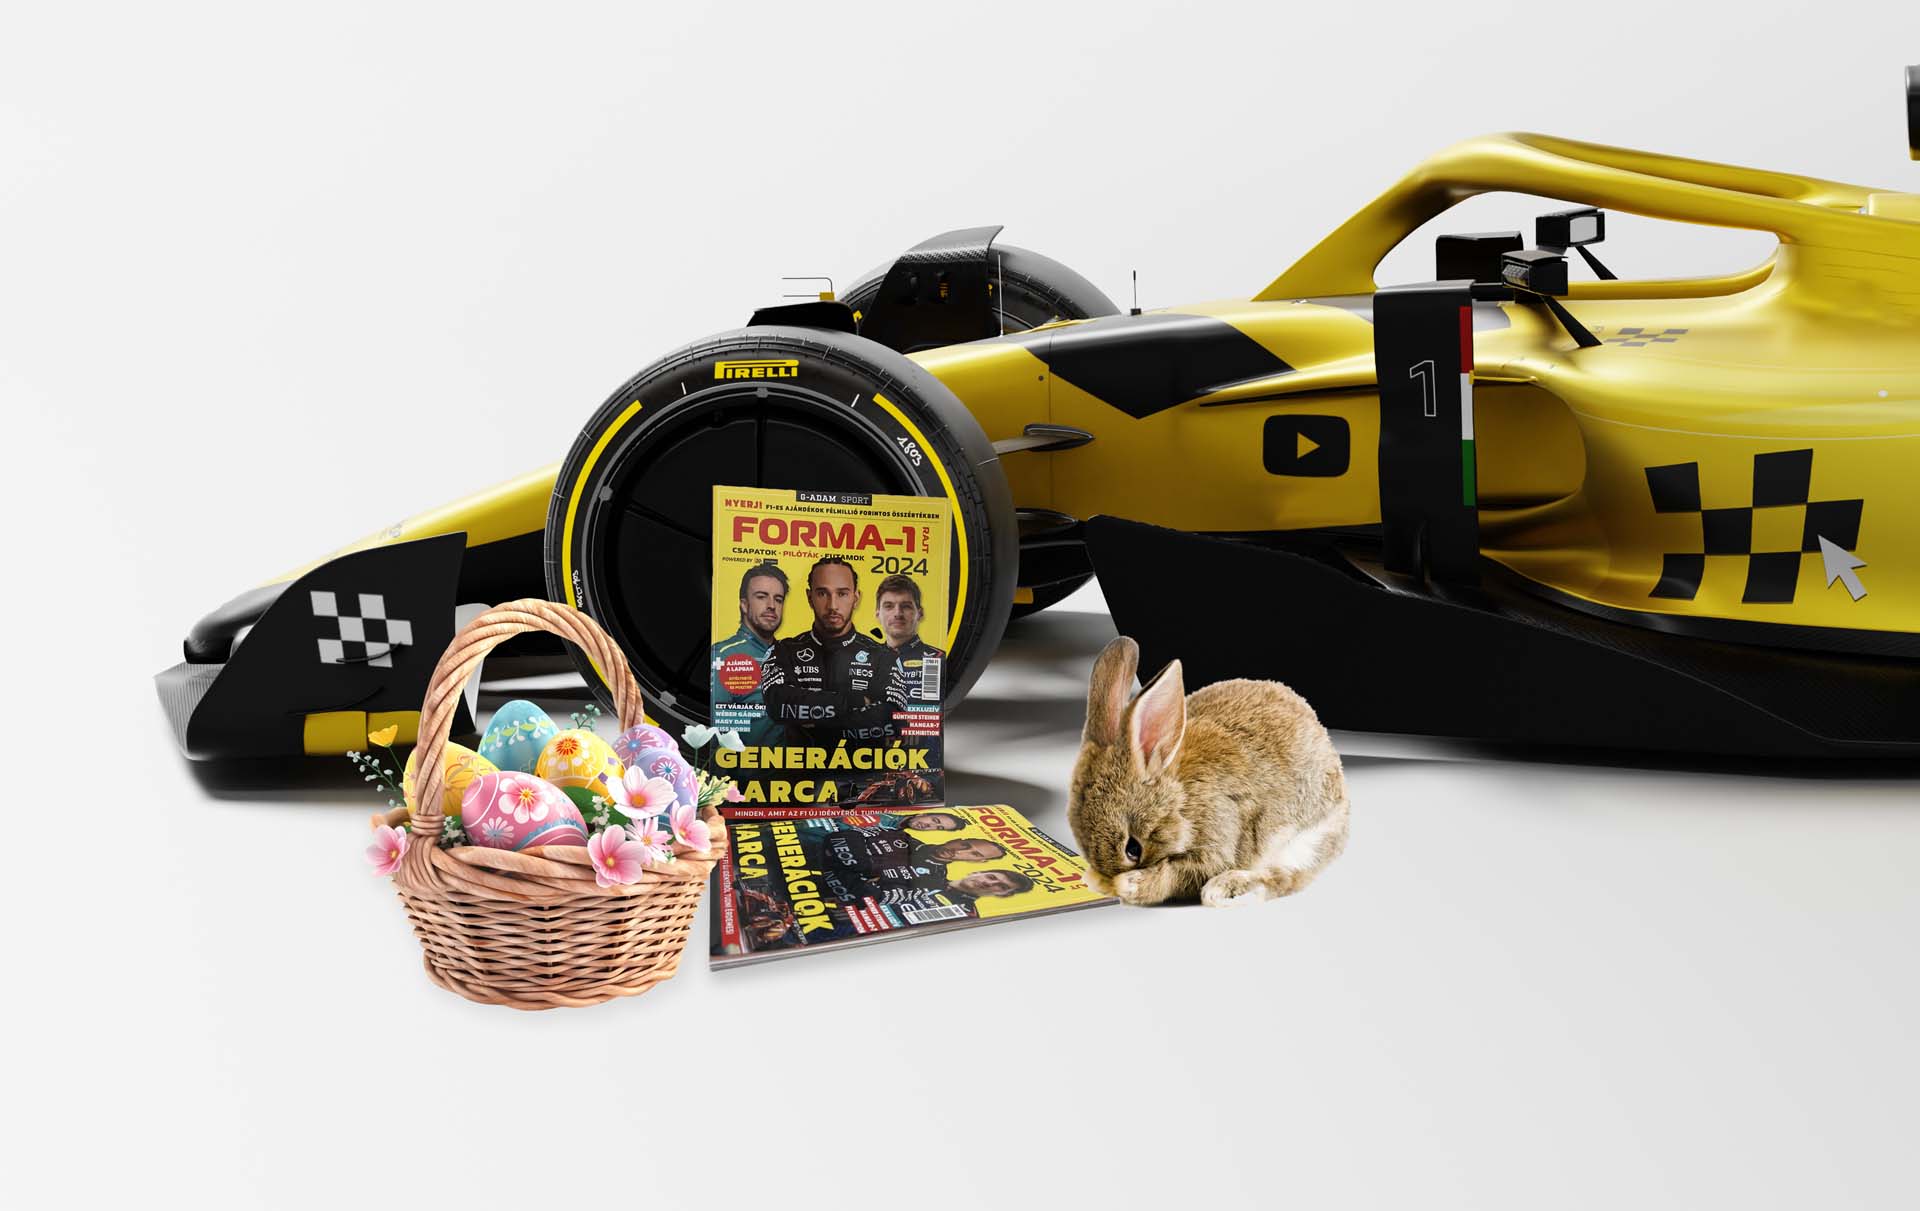 Adjátok át a gyorsaság és izgalom ajándékát az F1-rajongóknak!